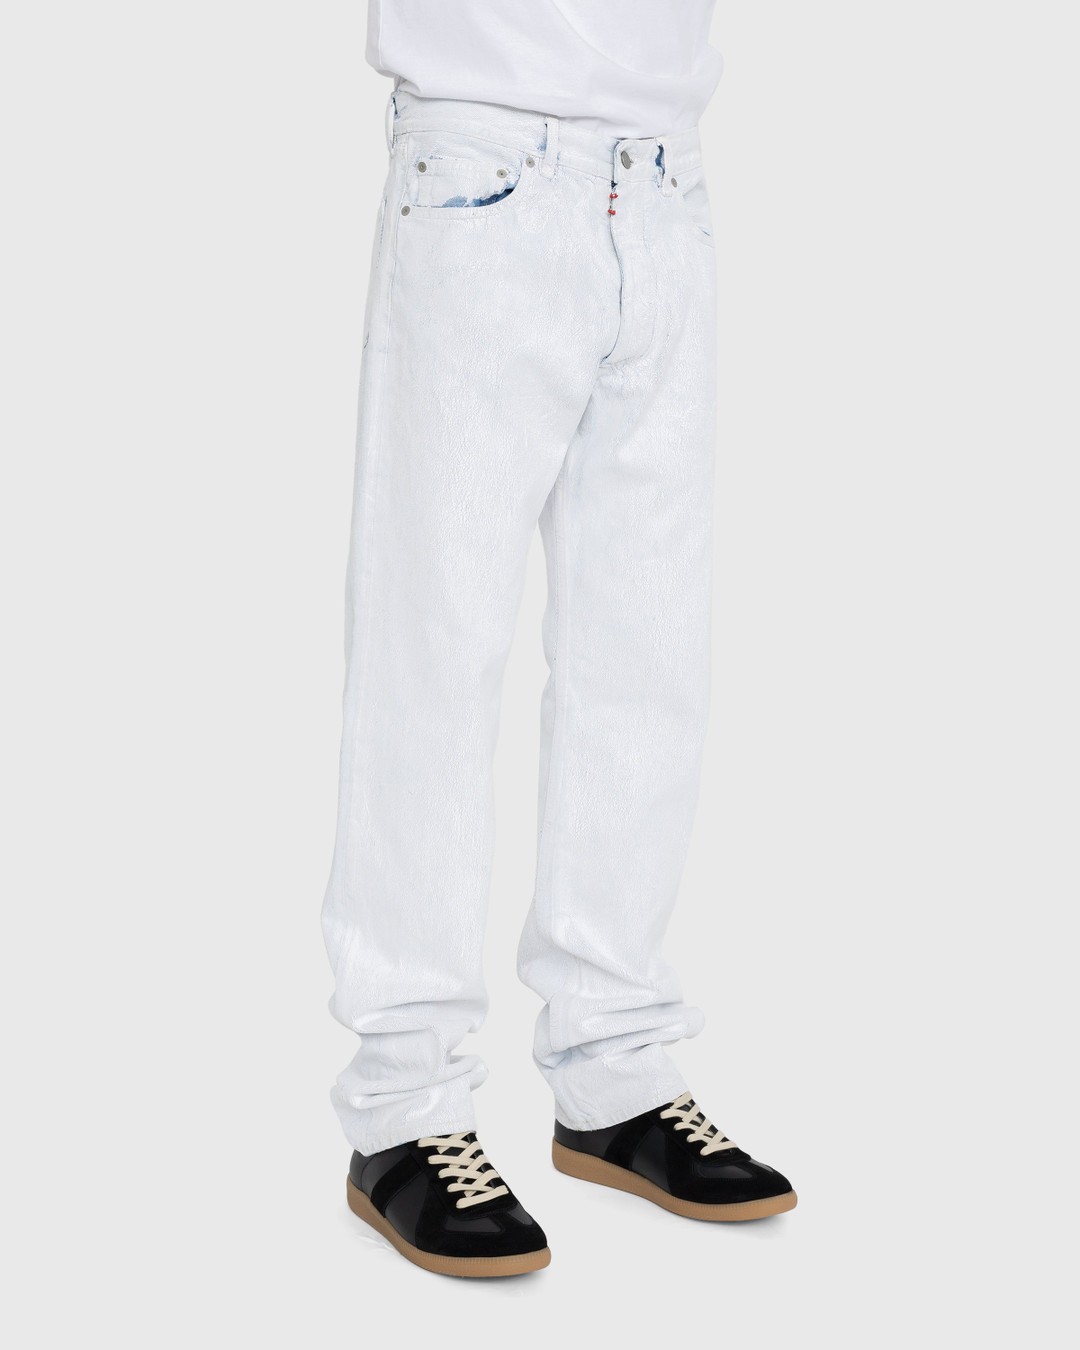 Maison Margiela – 5-Pocket Paint Jeans White - Pants - White - Image 3